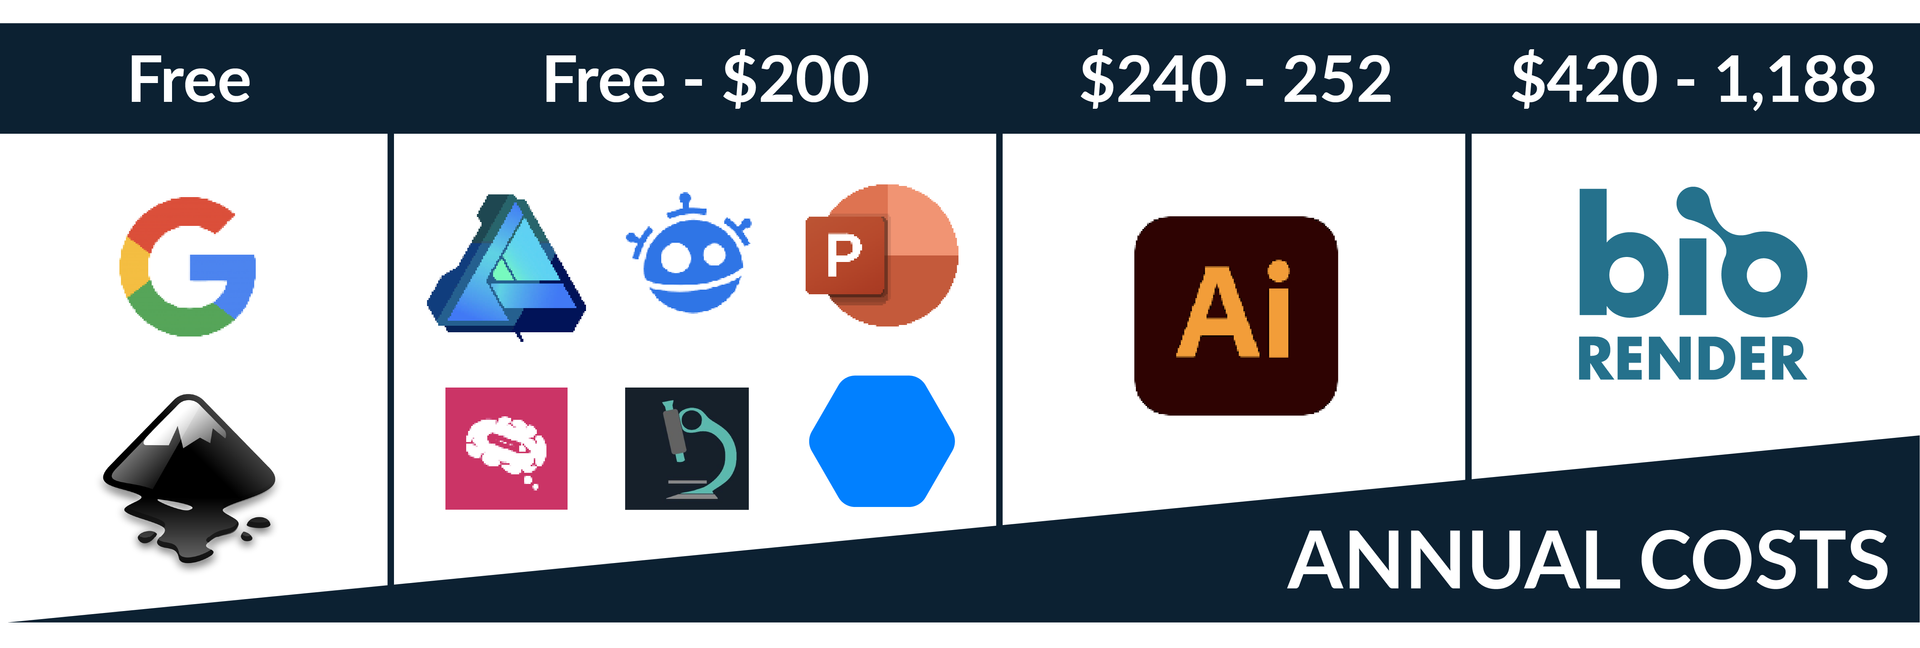 Scientific design tool annual cost comparison